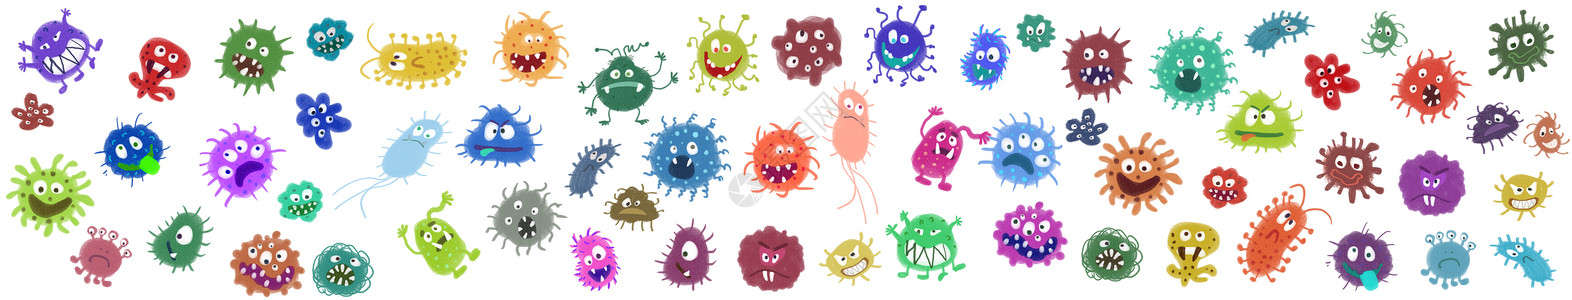 细菌病毒元素背景图片